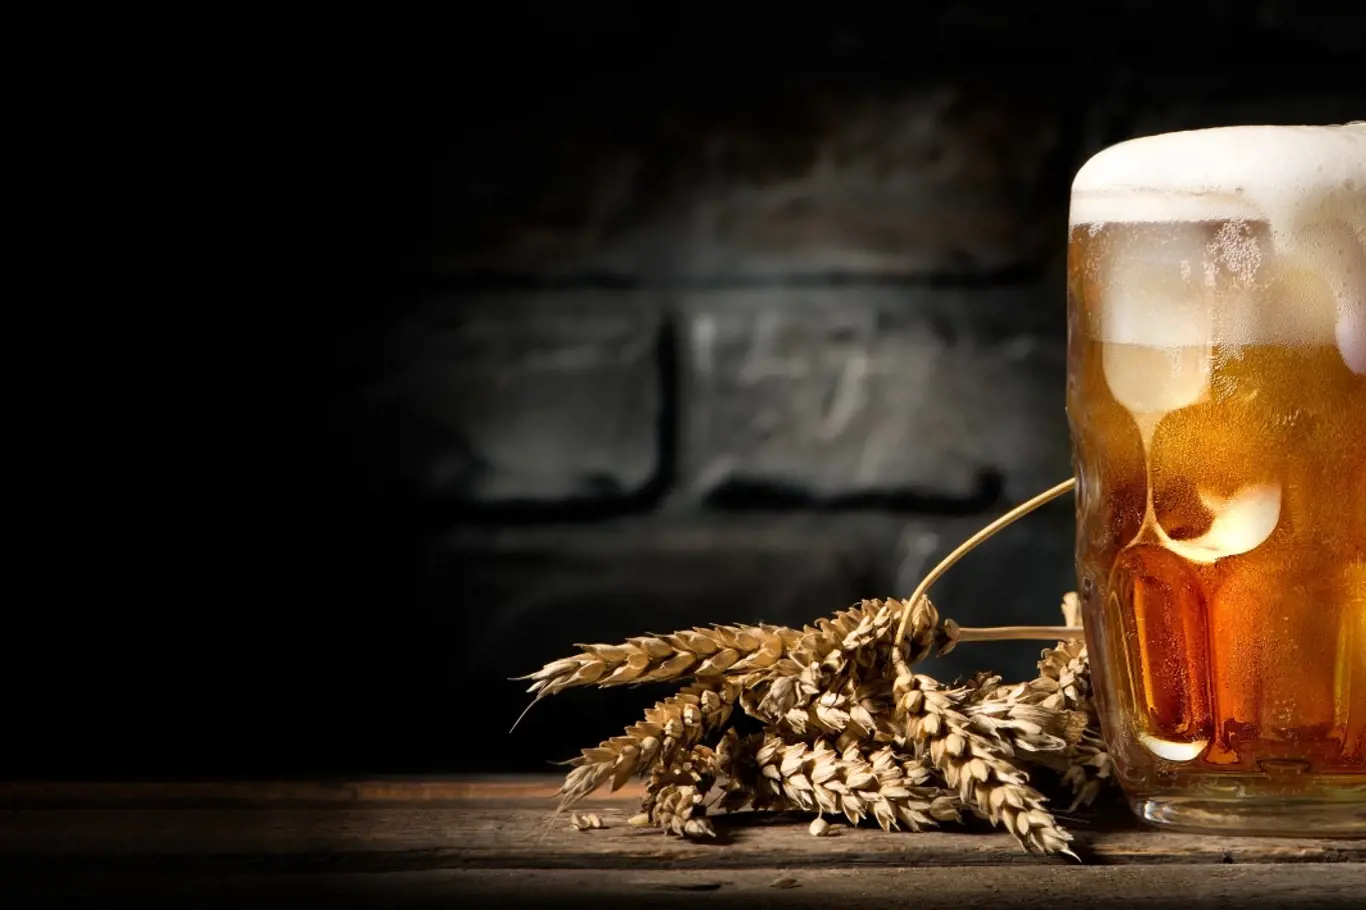 Pivo je nejen národním nápojem Čechů, ale i skvělým pomocníkem v domácnosti či pro udržení krásy